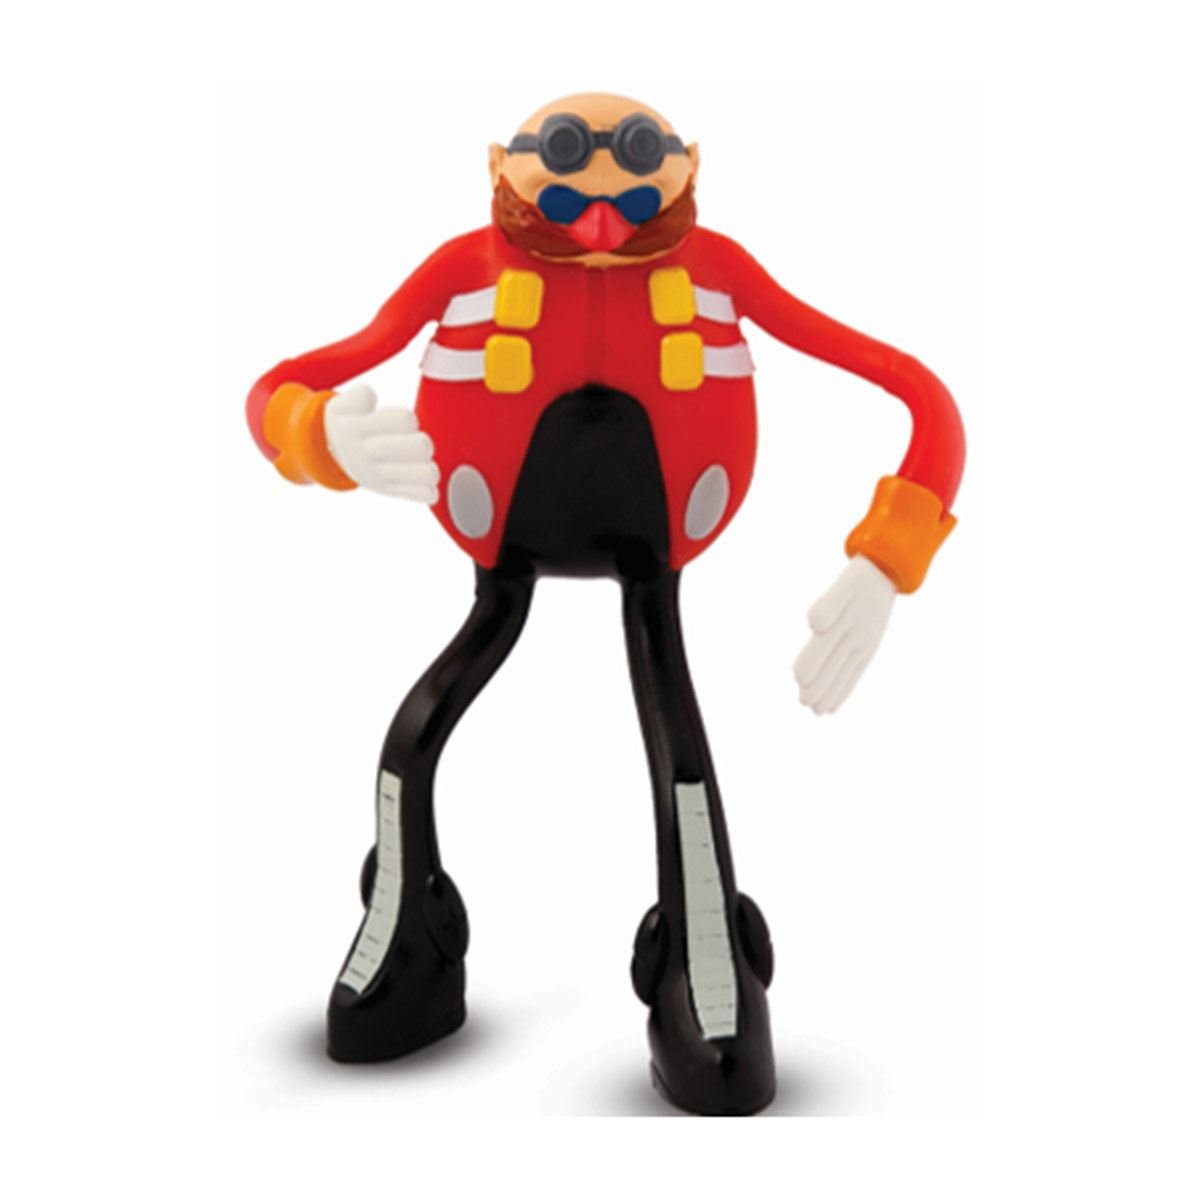 Muñeco Sonic Figura Articulada 10cm Wabro – JUGUETERIAS MONOCOCO